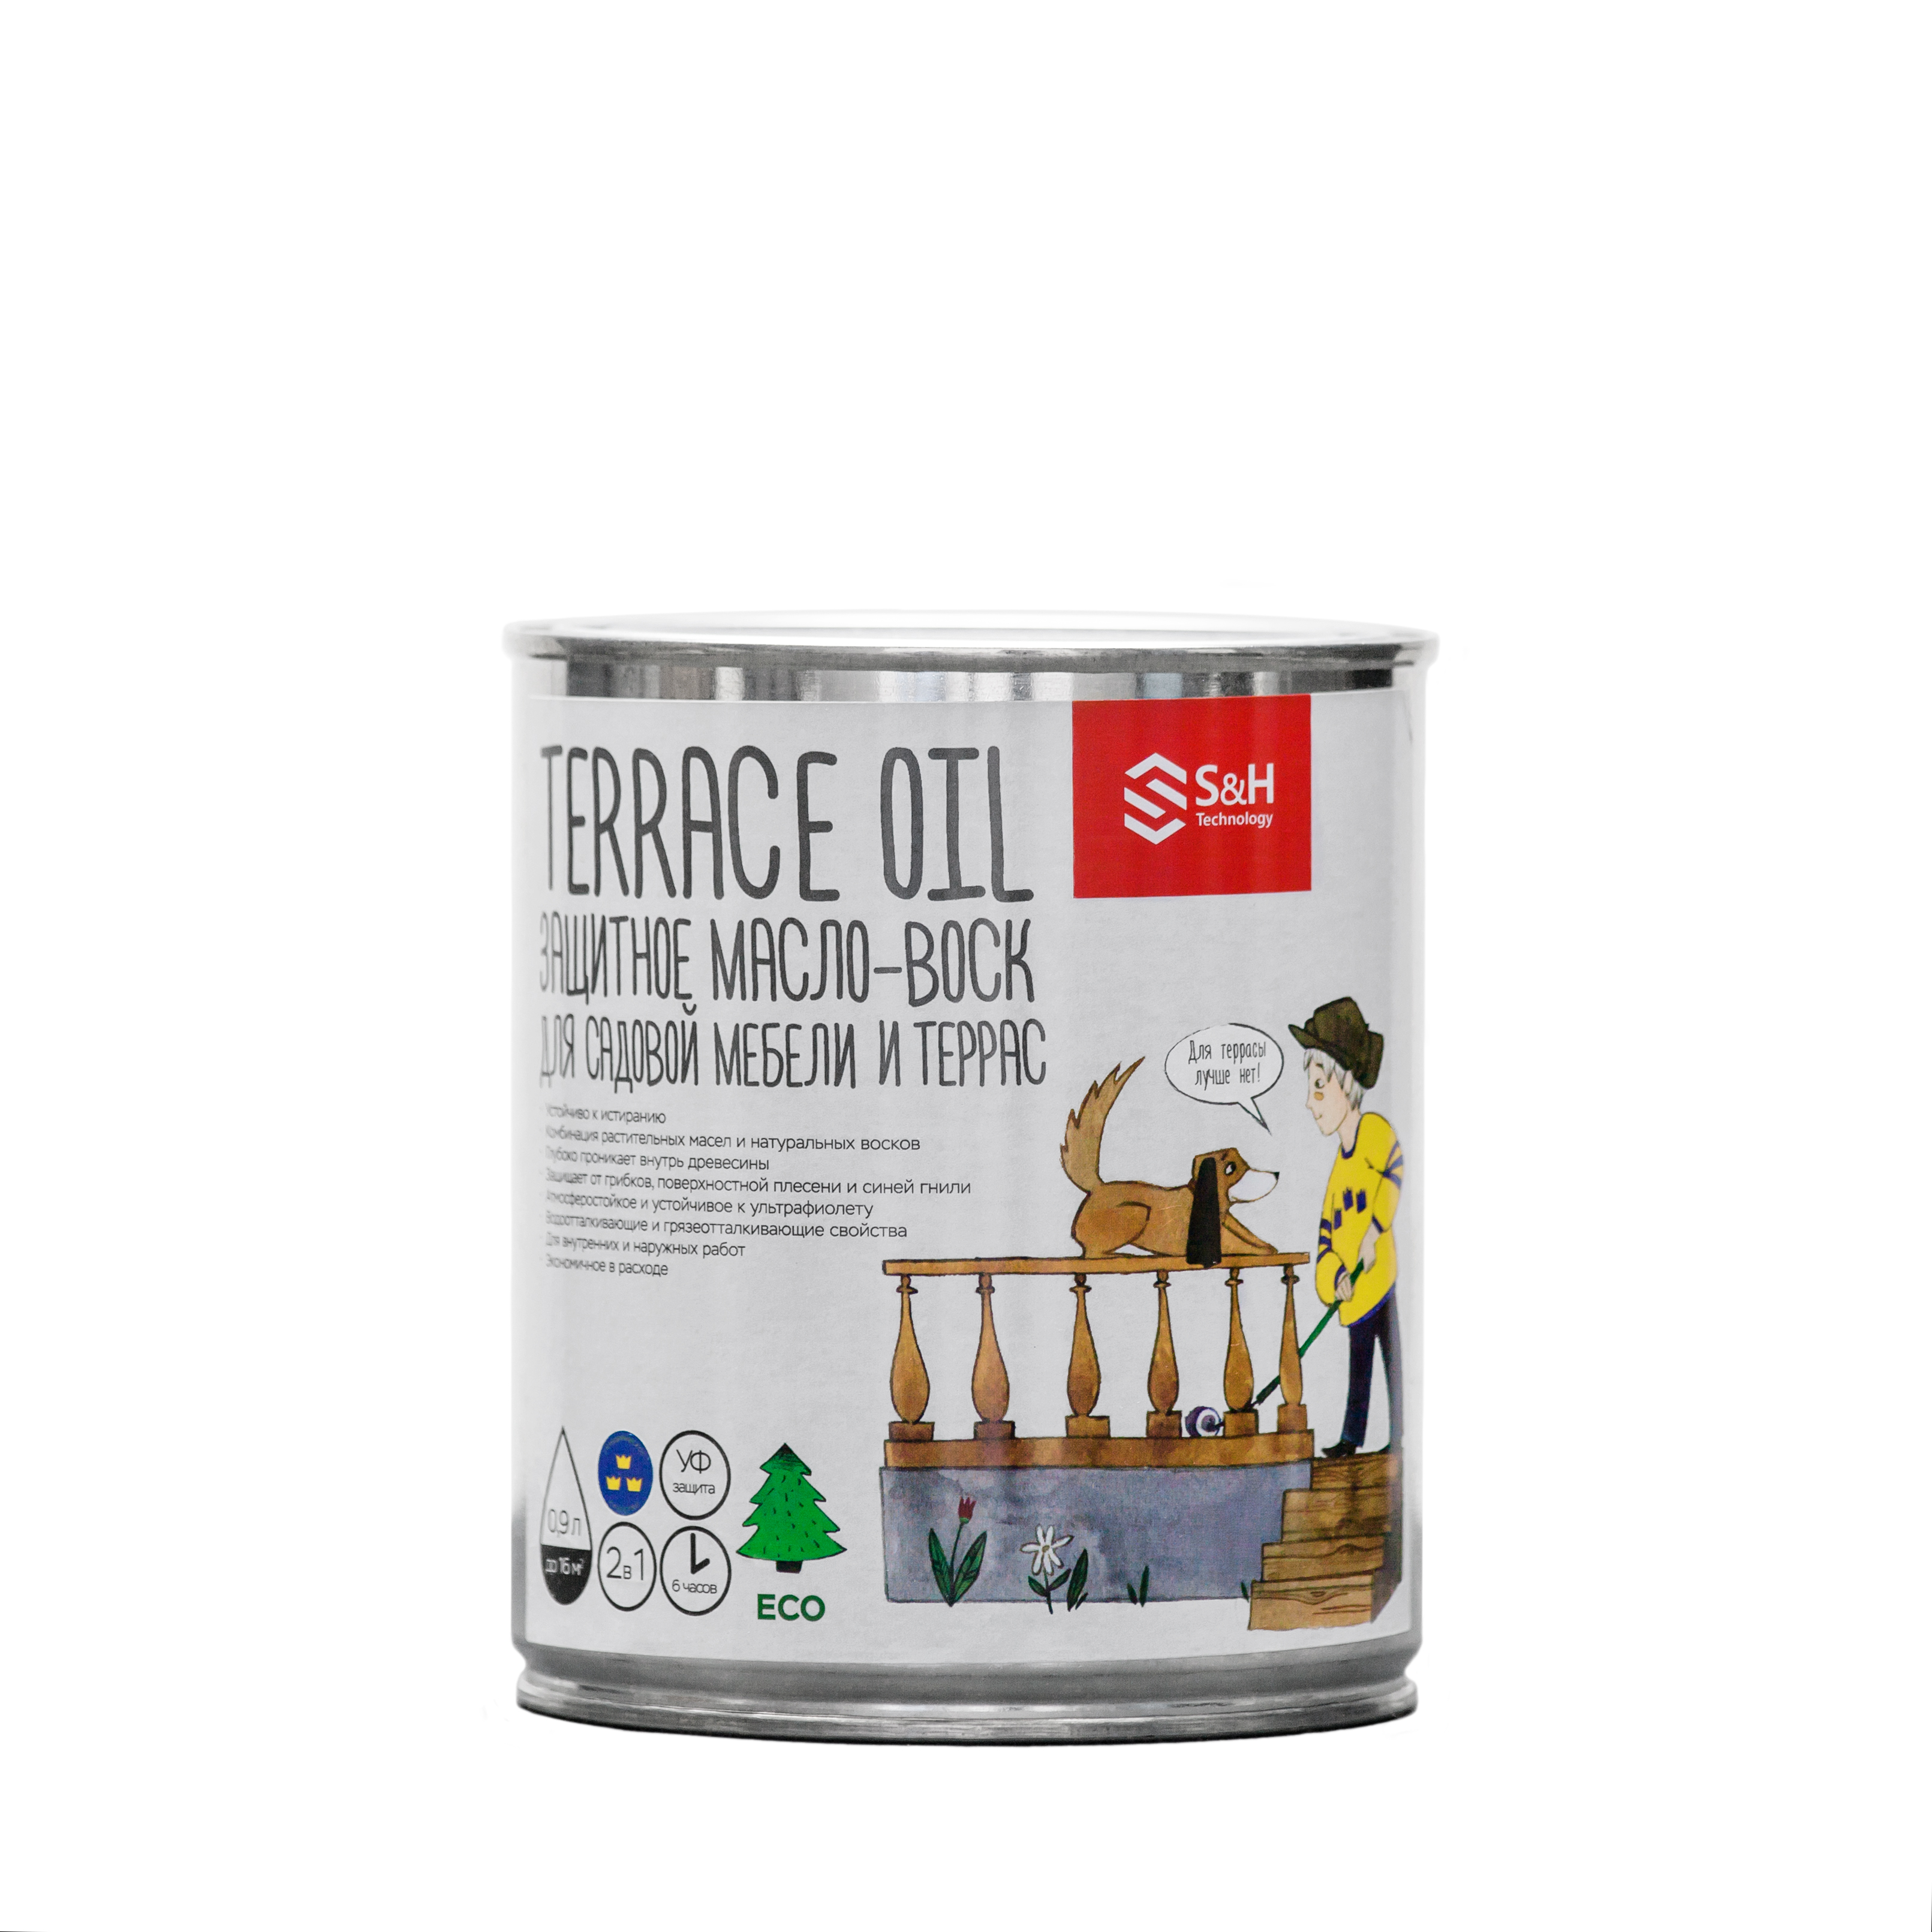 TERRACE OIL 2в1 защитное масло-воск для террас и мебели 0,9 л